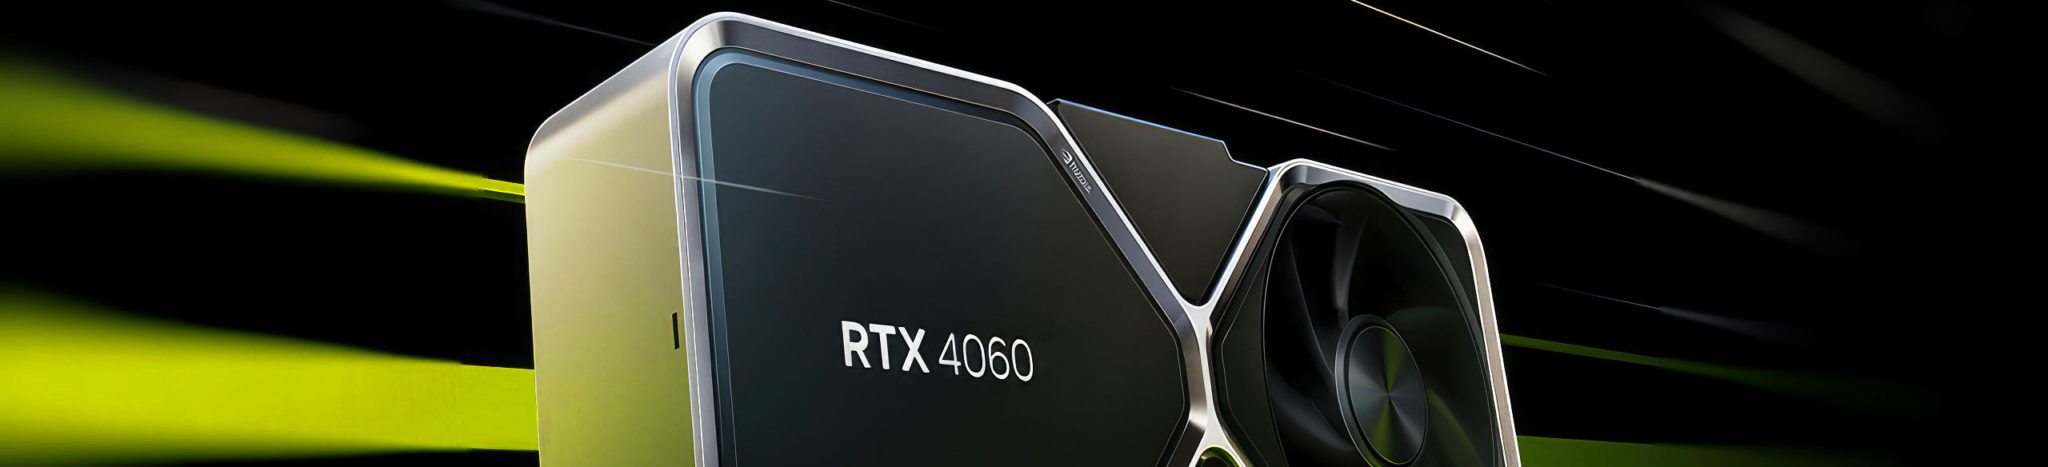 6月29日上市 英伟达宣传RTX 4060具备超高性价比